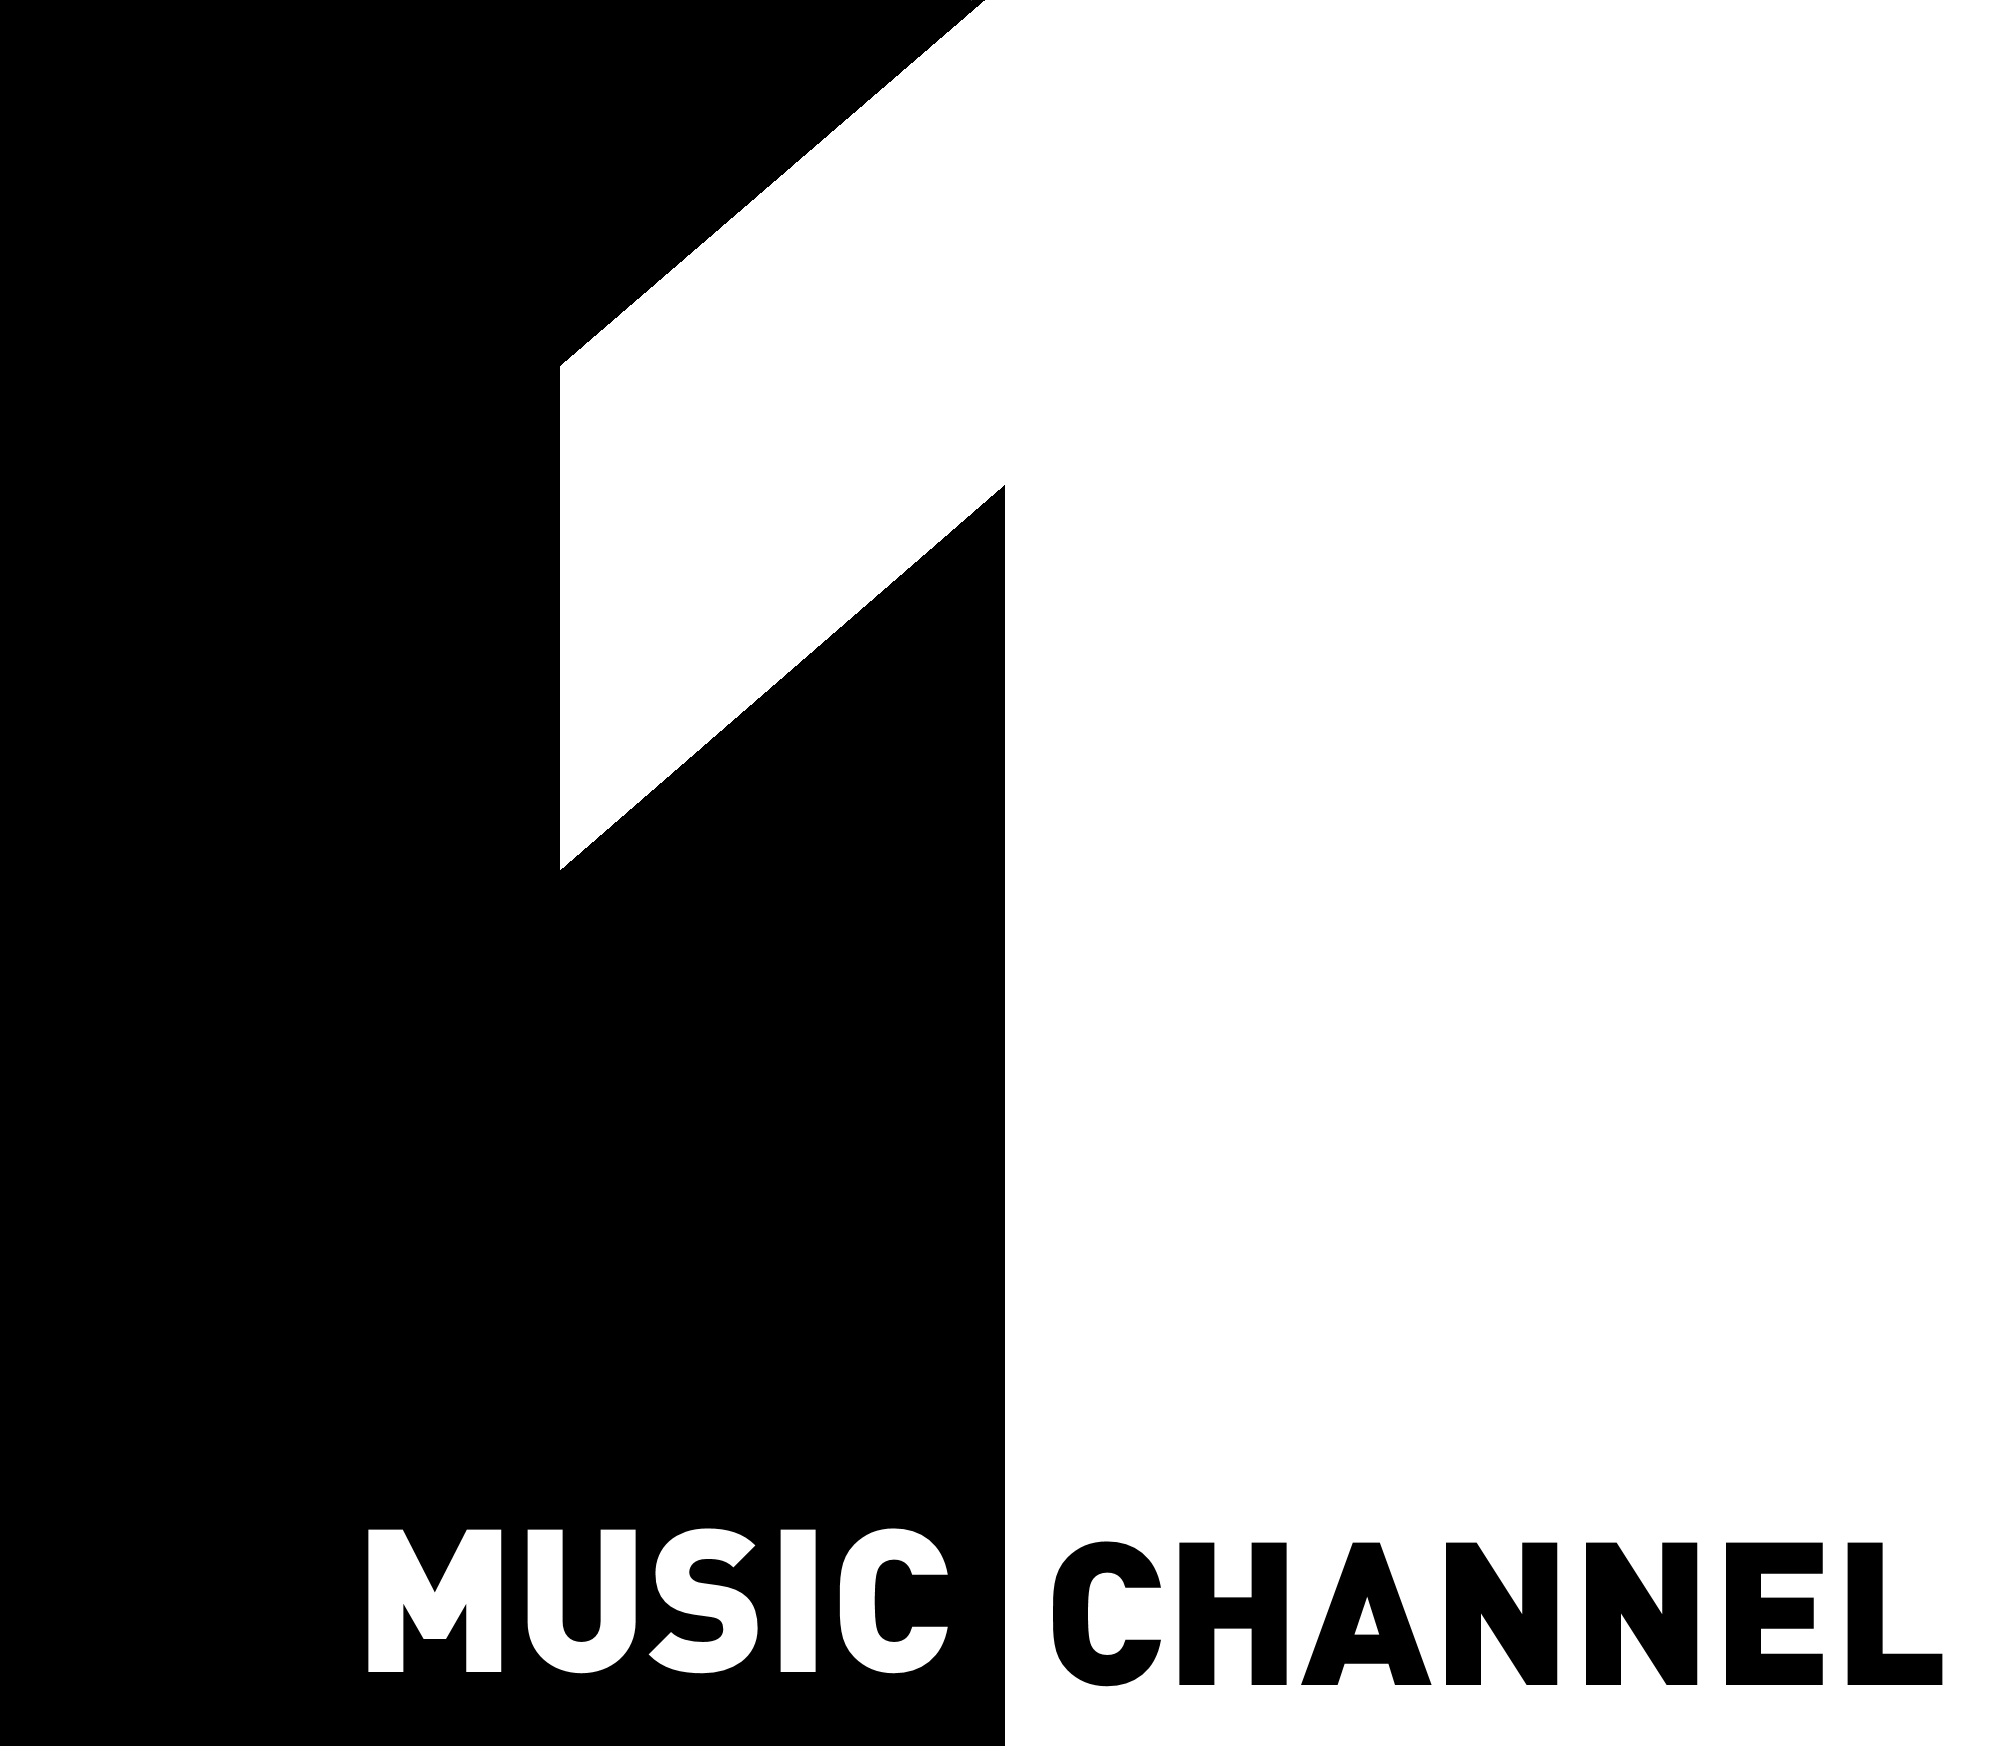 Music channel 1. Логотип канала первый музыкальный. 1 Music channel Romania. Live Music channel логотип Телеканал. 1 1 музыка чья